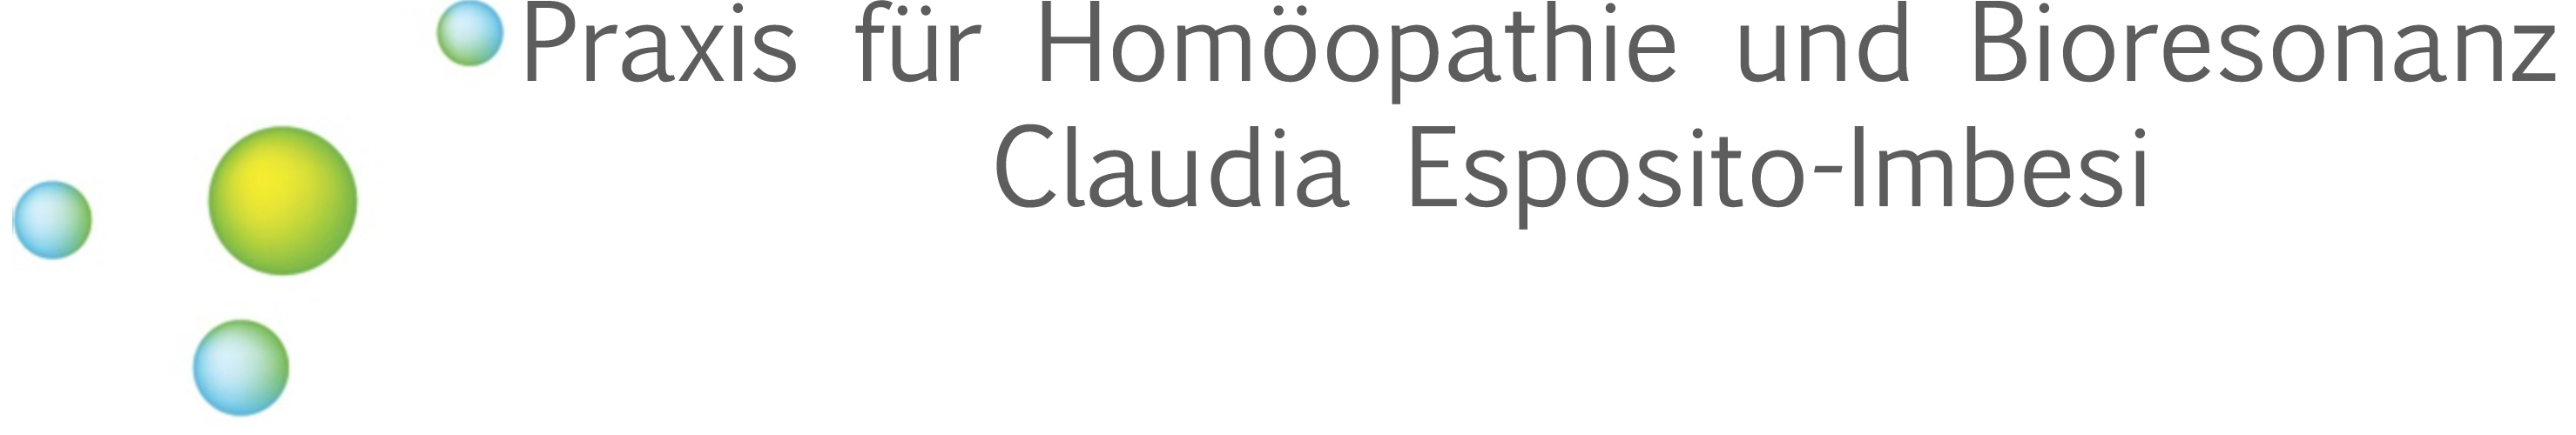 Praxis für klassische Homöopathie und Bioresonanz<br />Claudia Esposito-Imbesi<br />